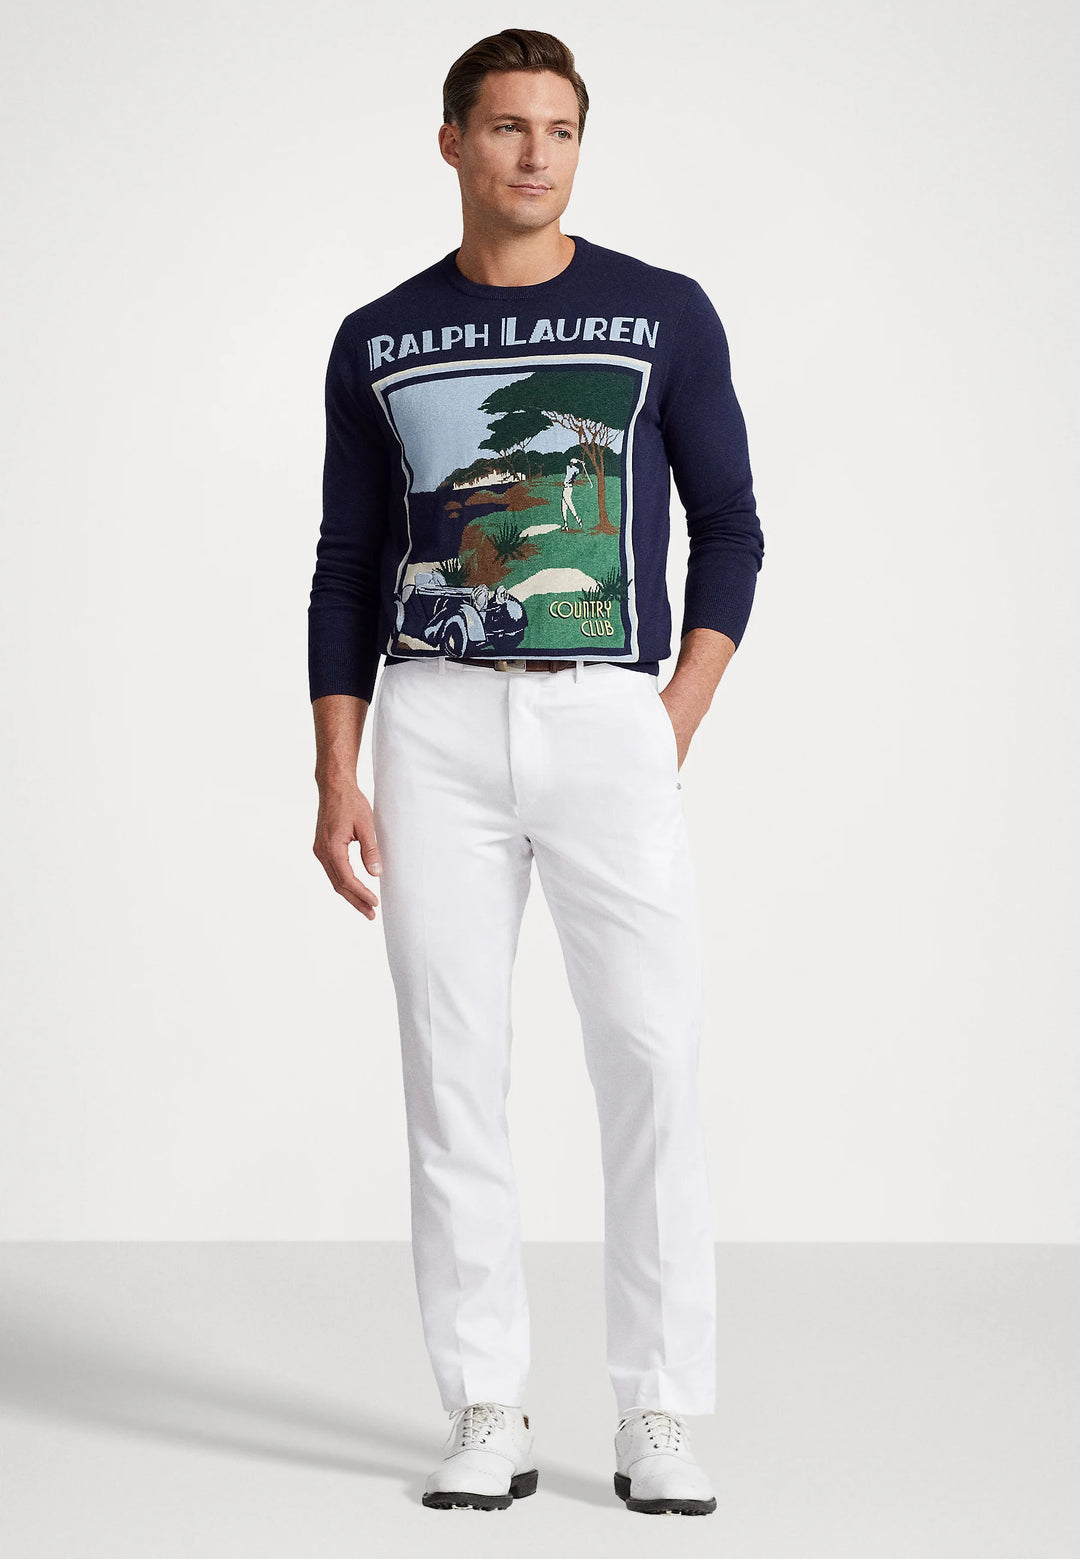 Ralph Lauren pullover long sleeve